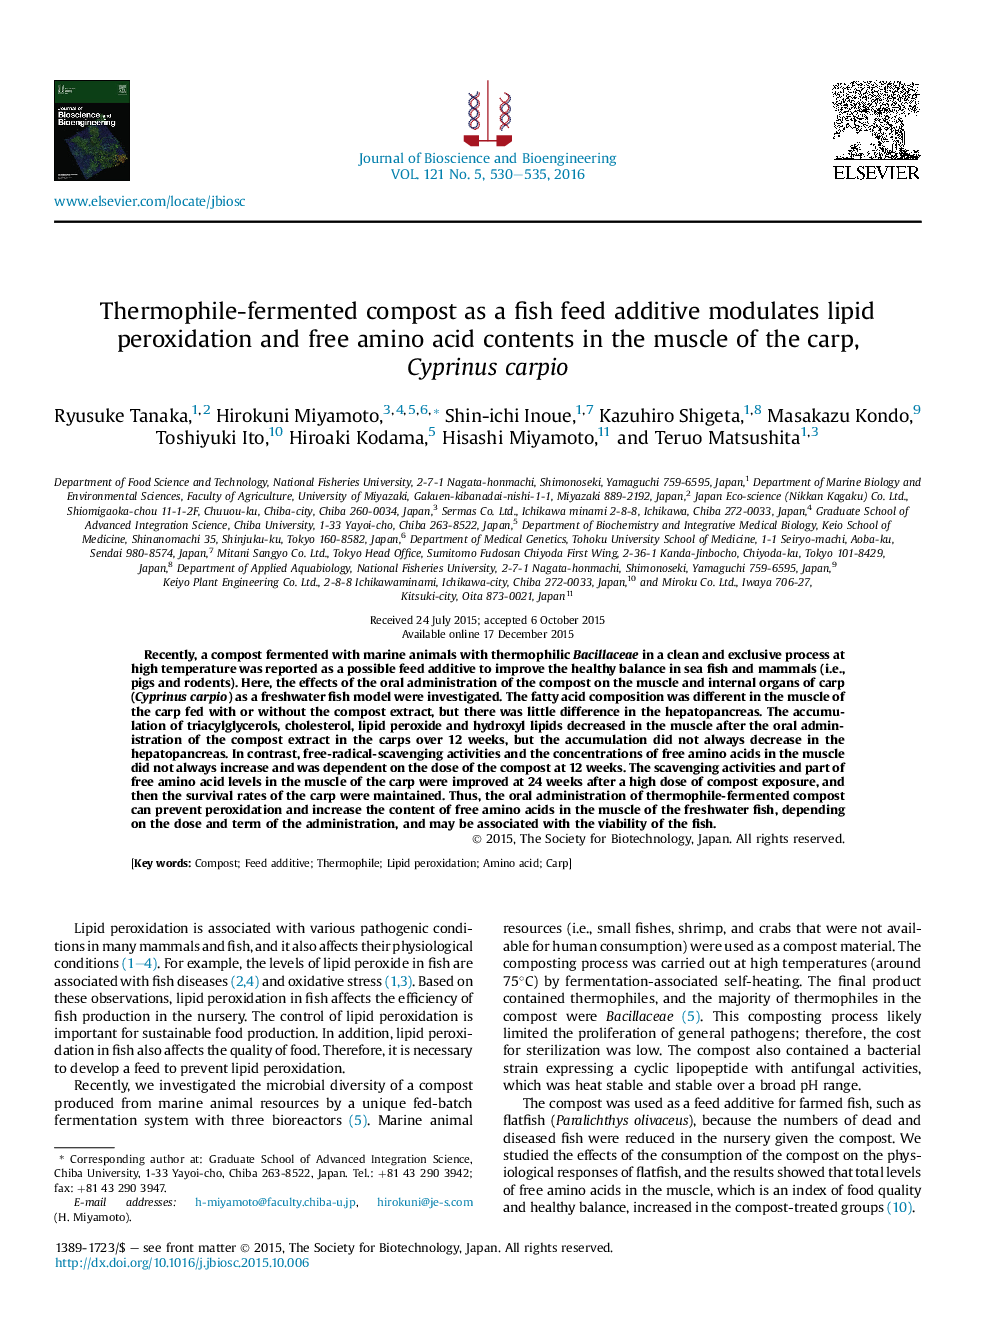 کمپوست تخمیر ترموکوئیل به عنوان یک افزودنی تغذیه ماهی، پراکسیداسیون لیپید و محتوای آزاد آمینو اسید آزاد در ماهیچه کپور، Cyprinus carpio